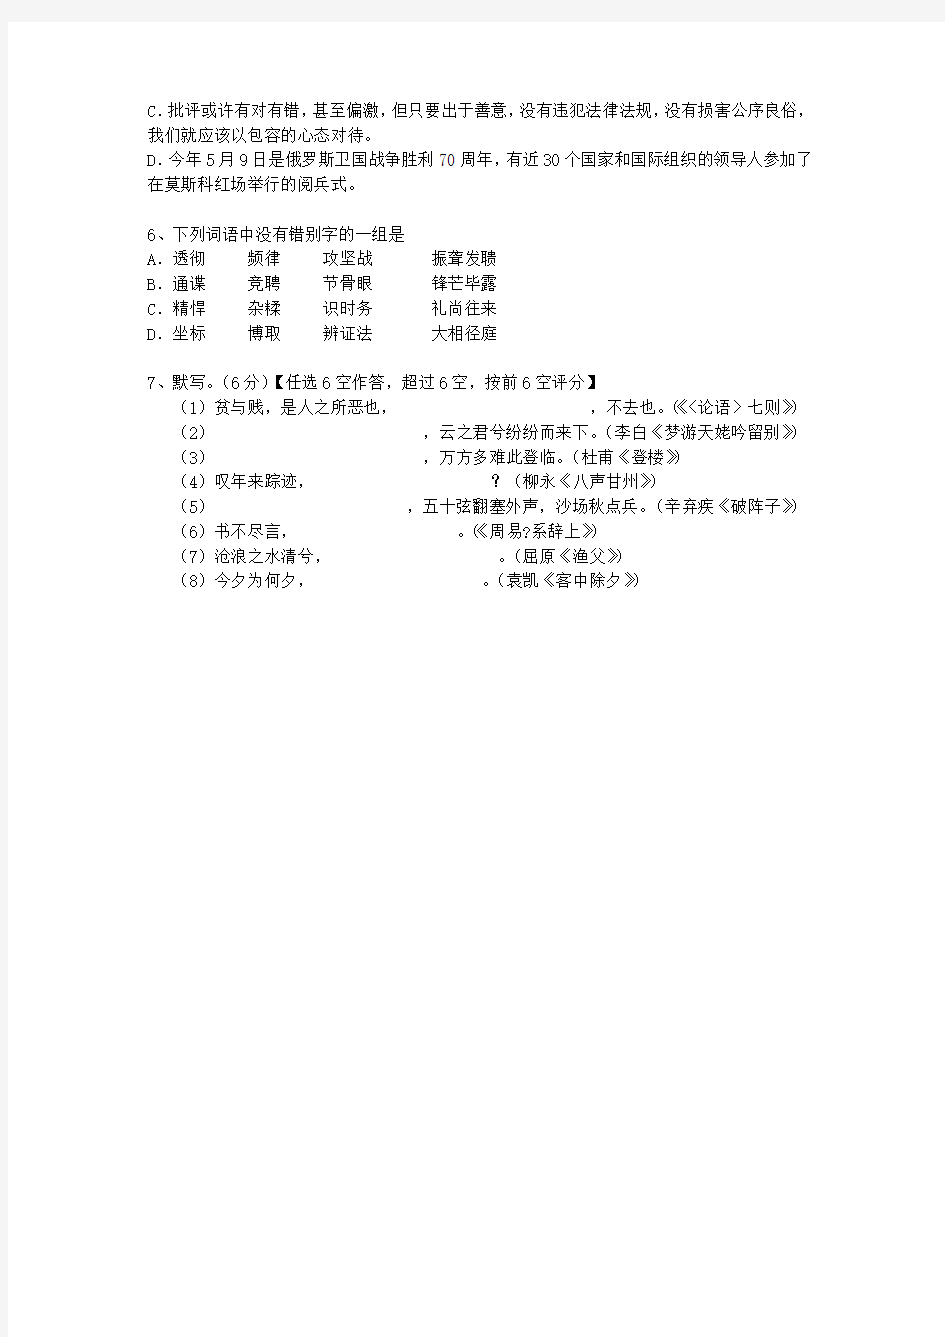 2012江苏省高考语文试卷答案、考点详解以及2016预测考试题库